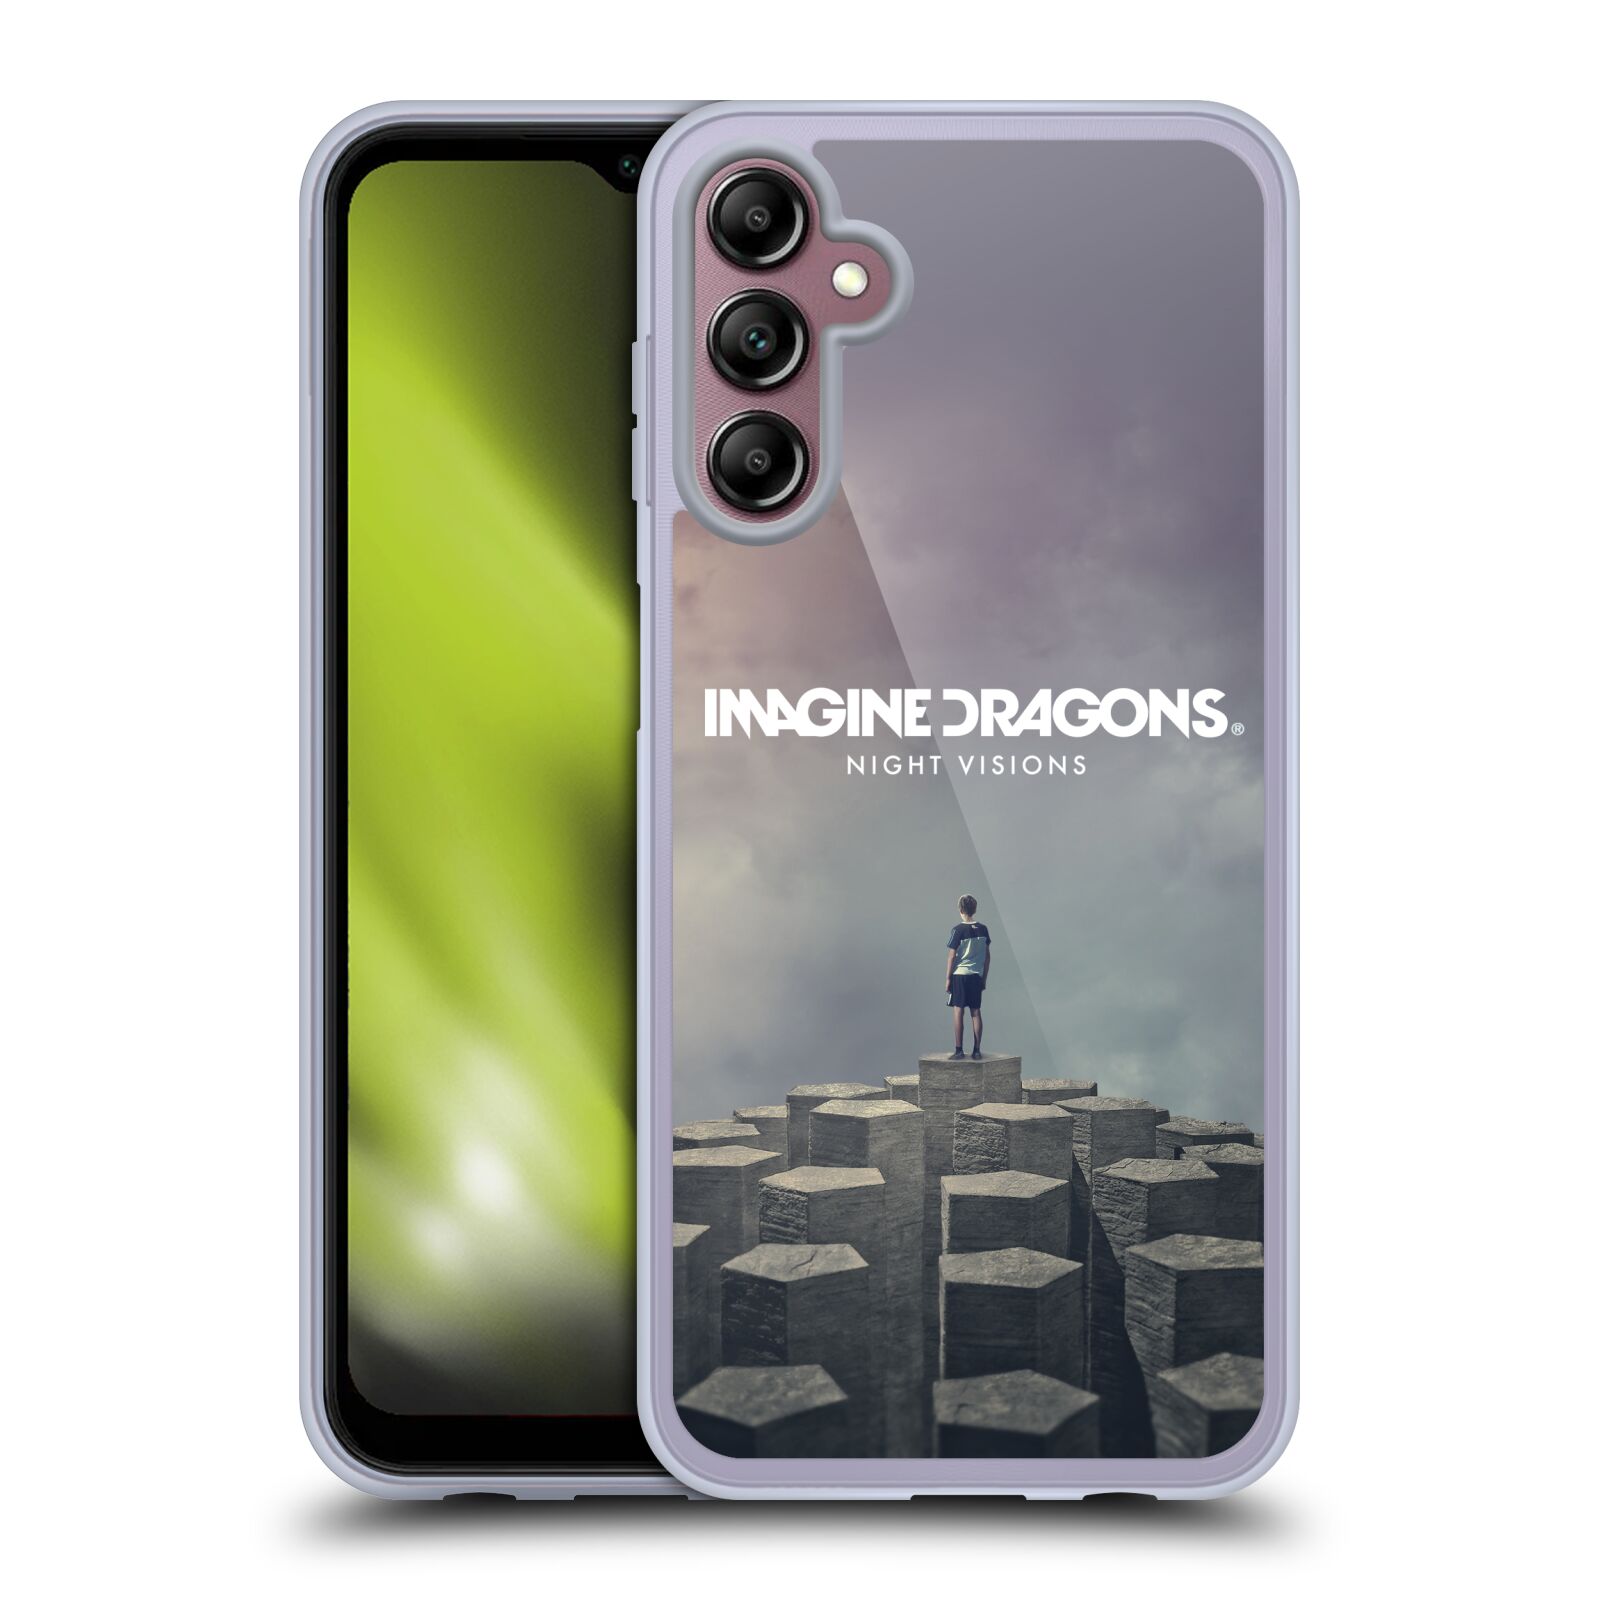 Silikonové pouzdro na mobil Samsung Galaxy A14 5G / LTE - Imagine Dragons - Night Visions (Silikonový kryt, obal, pouzdro na mobilní telefon Samsung Galaxy A14 5G / LTE s licencovaným motivem Imagine Dragons - Night Visions)